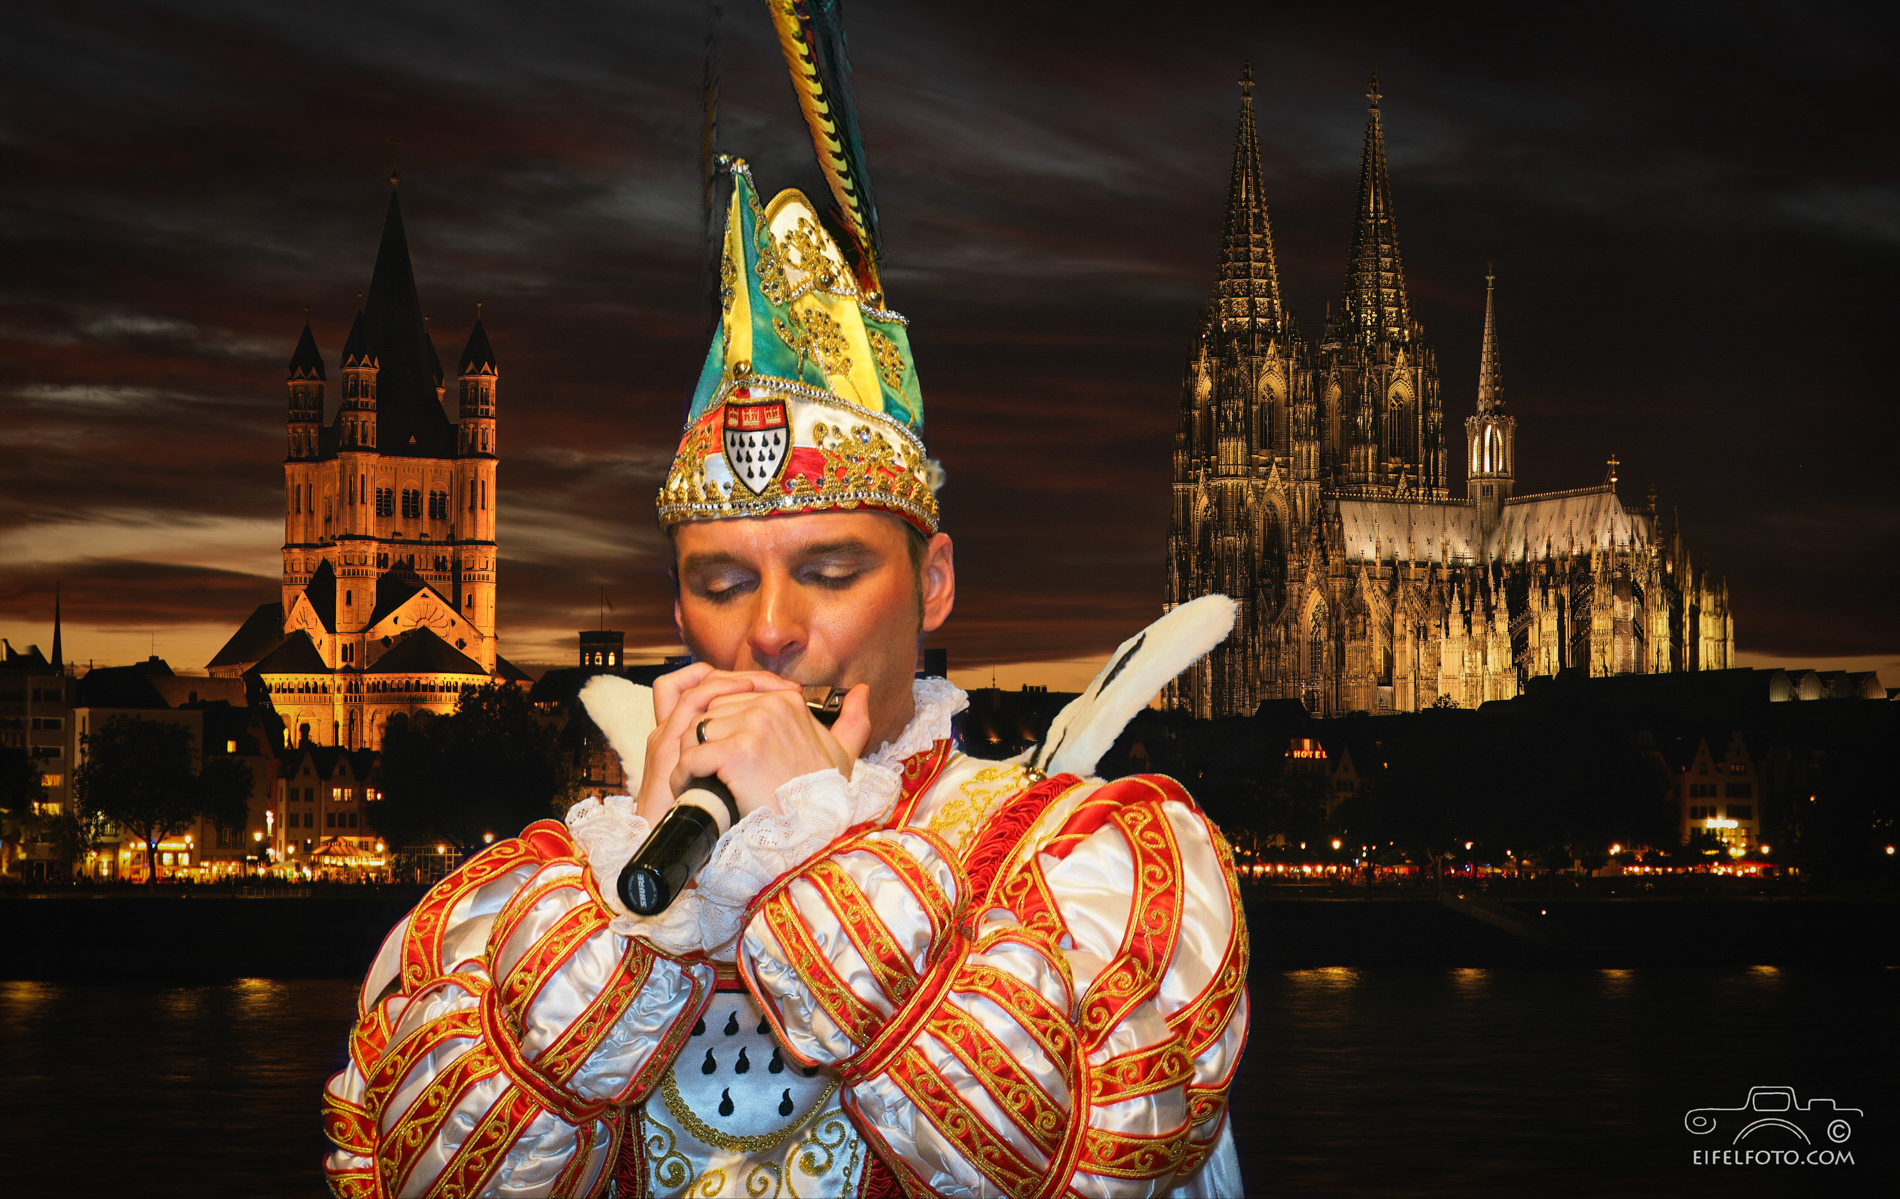 Der Prinz des Kölner Dreigestirns 2015, Holger Kirsch - der Prinz mit der Mundharmonika